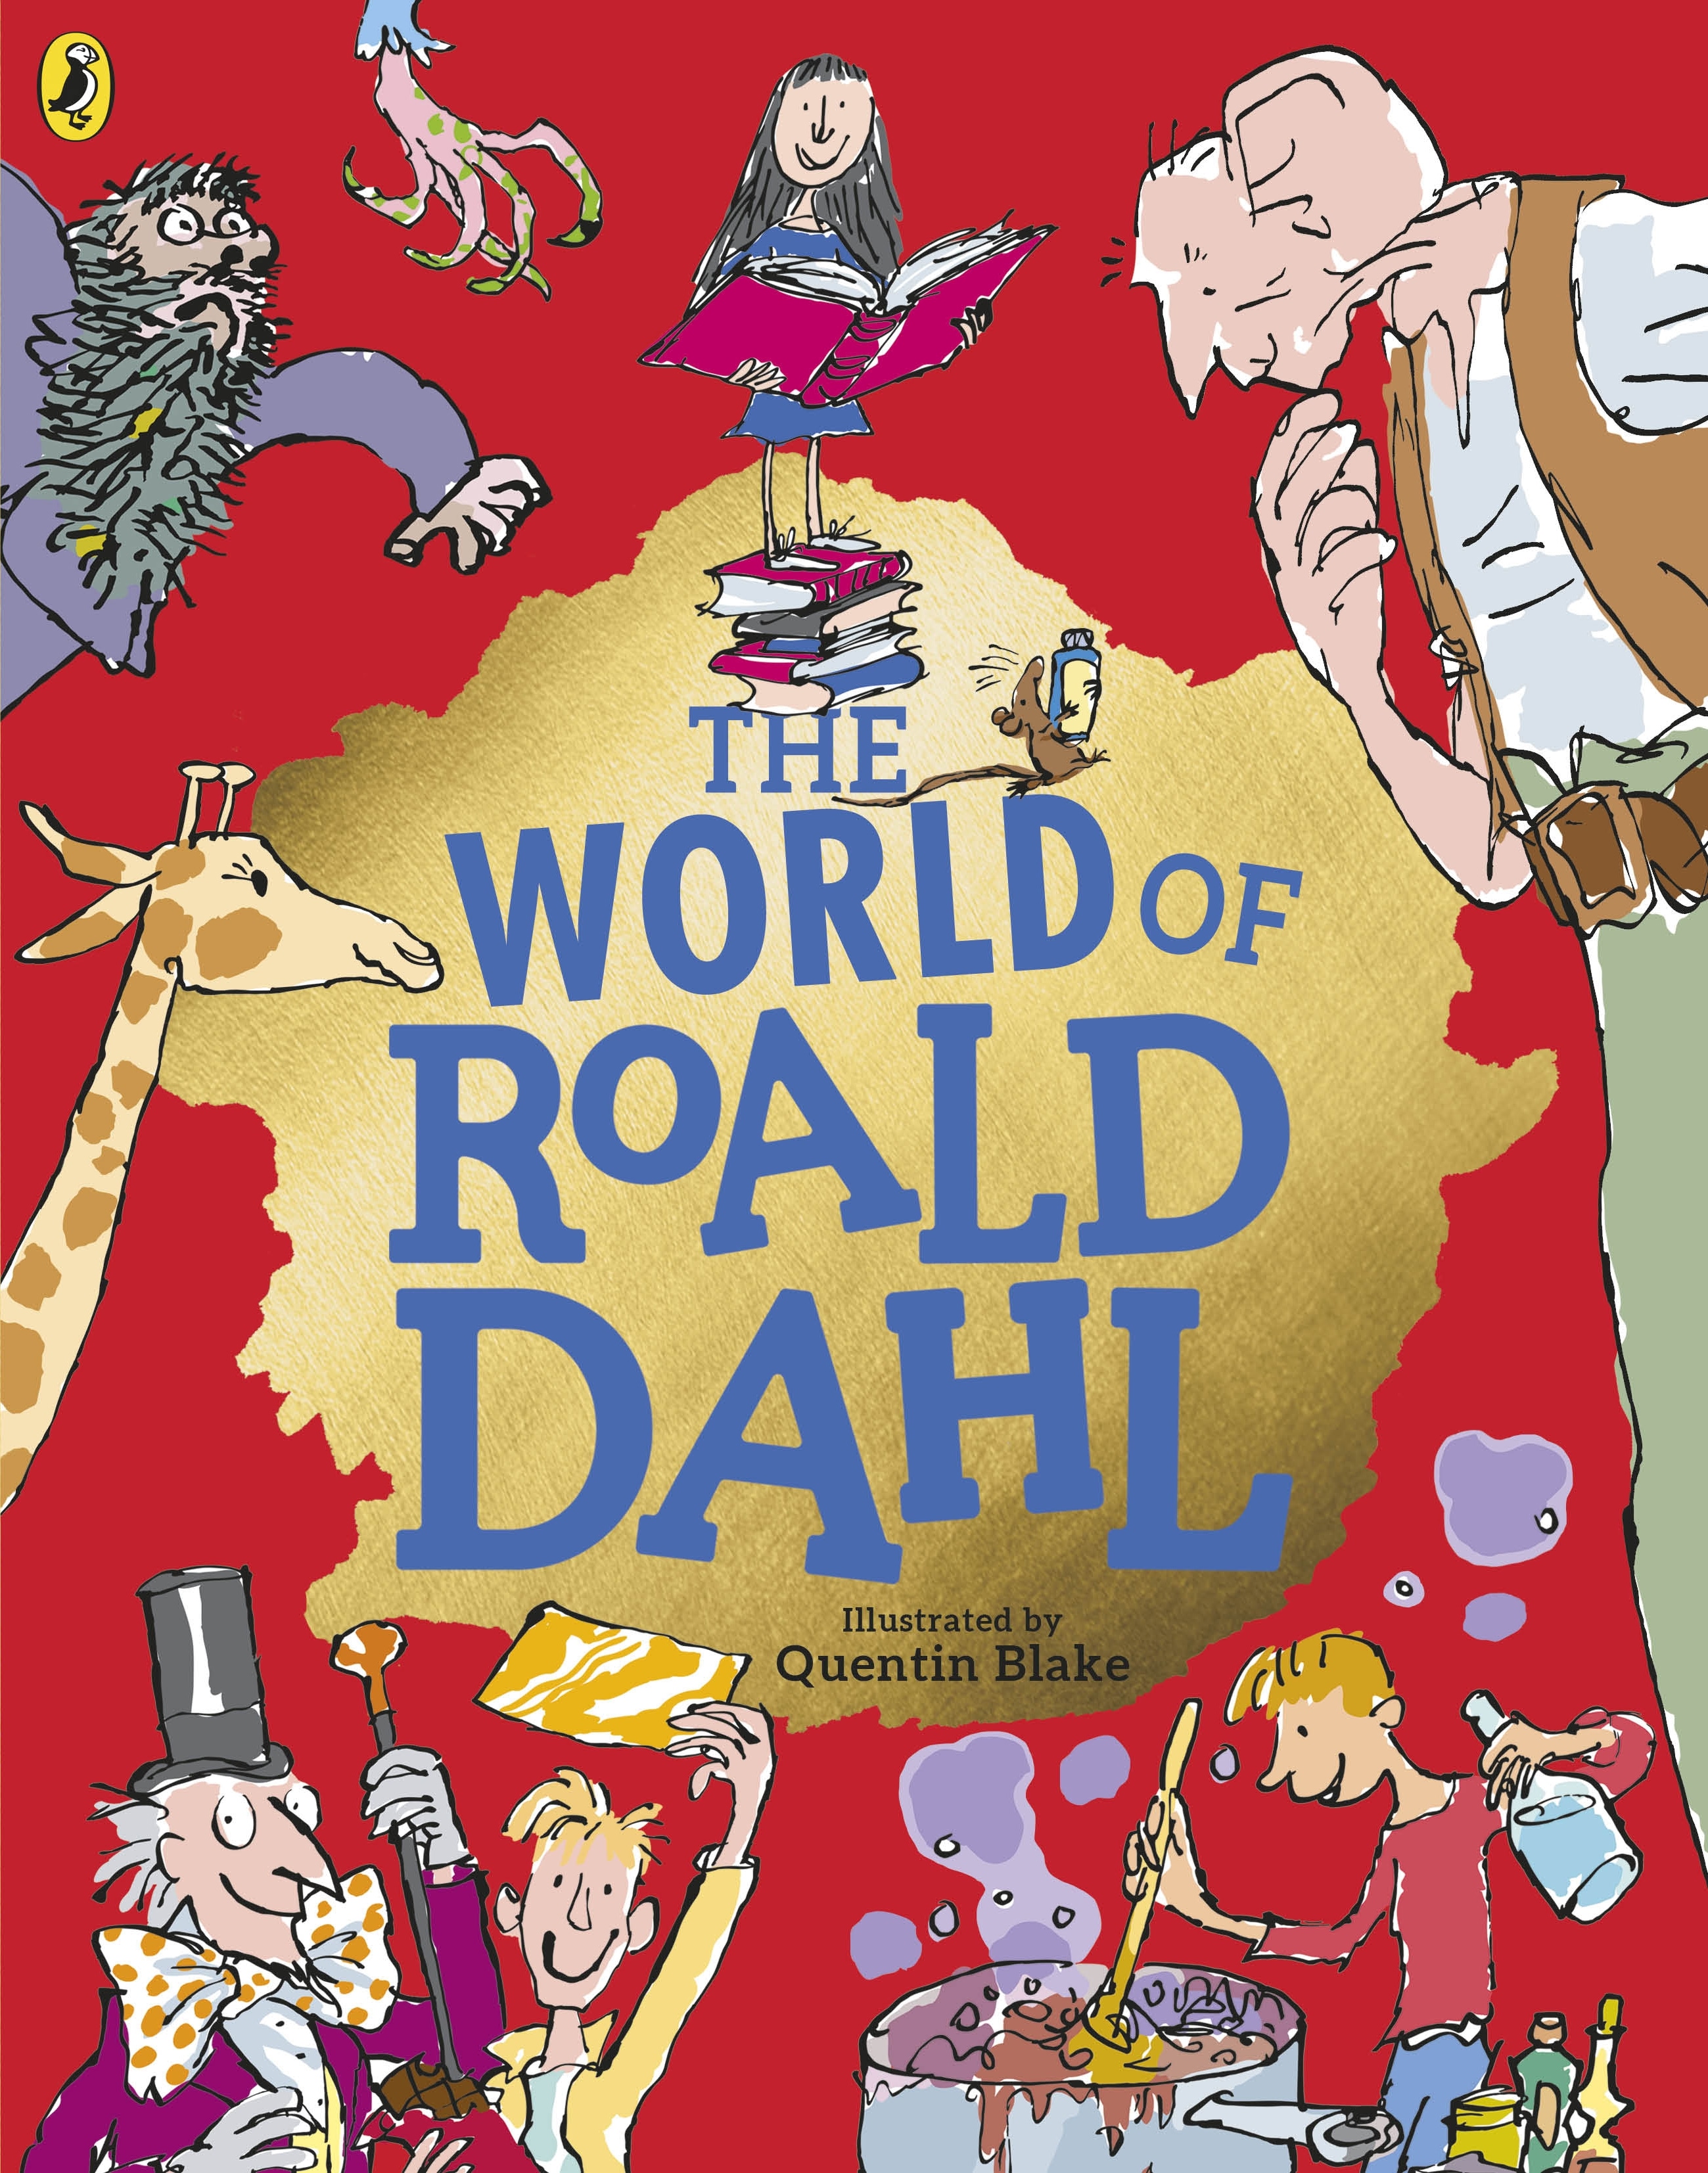 Book “The World of Roald Dahl” by Roald Dahl — September 3, 2020